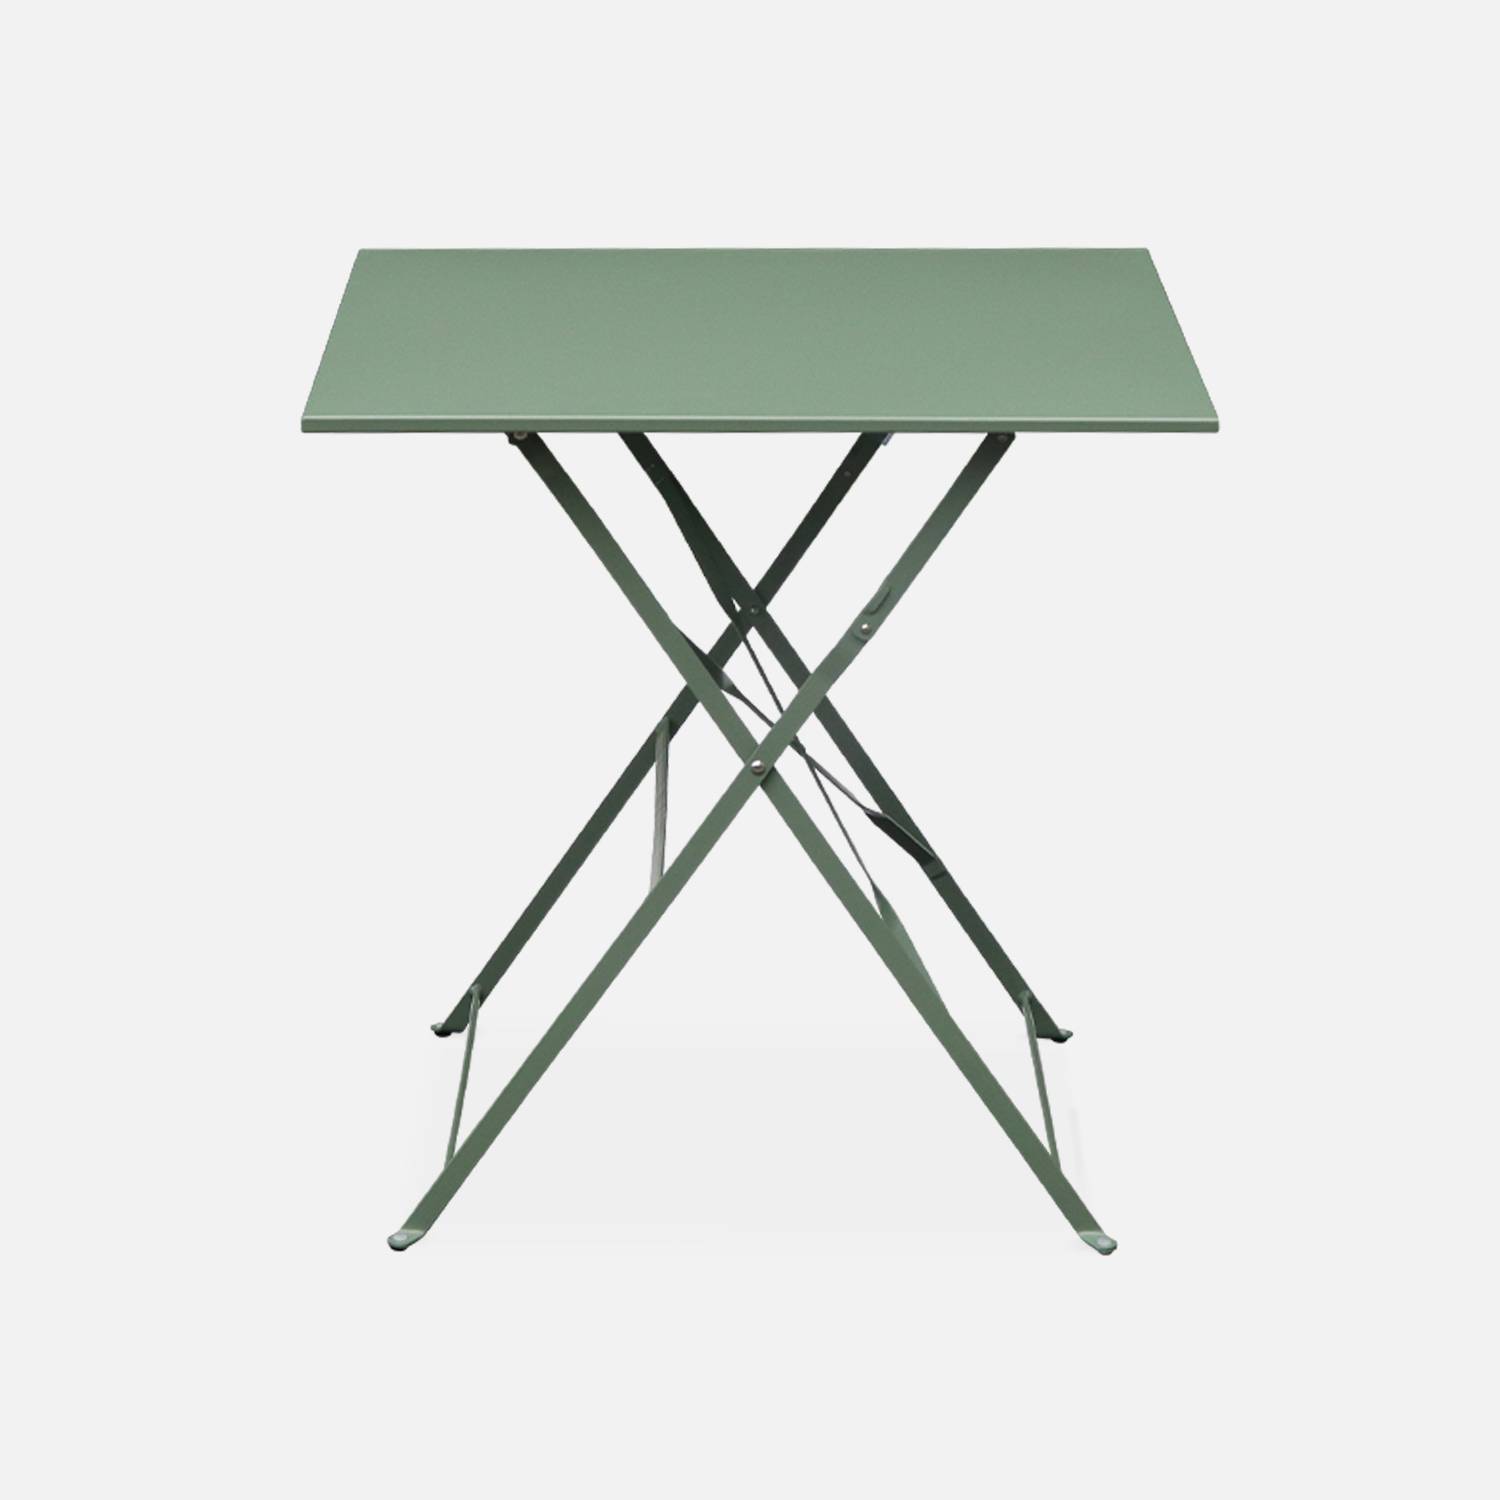 Klappbare Bistro-Gartenmöbel - Emilia quadratisch graugrün - Tisch 70x70cm mit zwei Klappstühlen aus pulverbeschichtetem Stahl Photo3